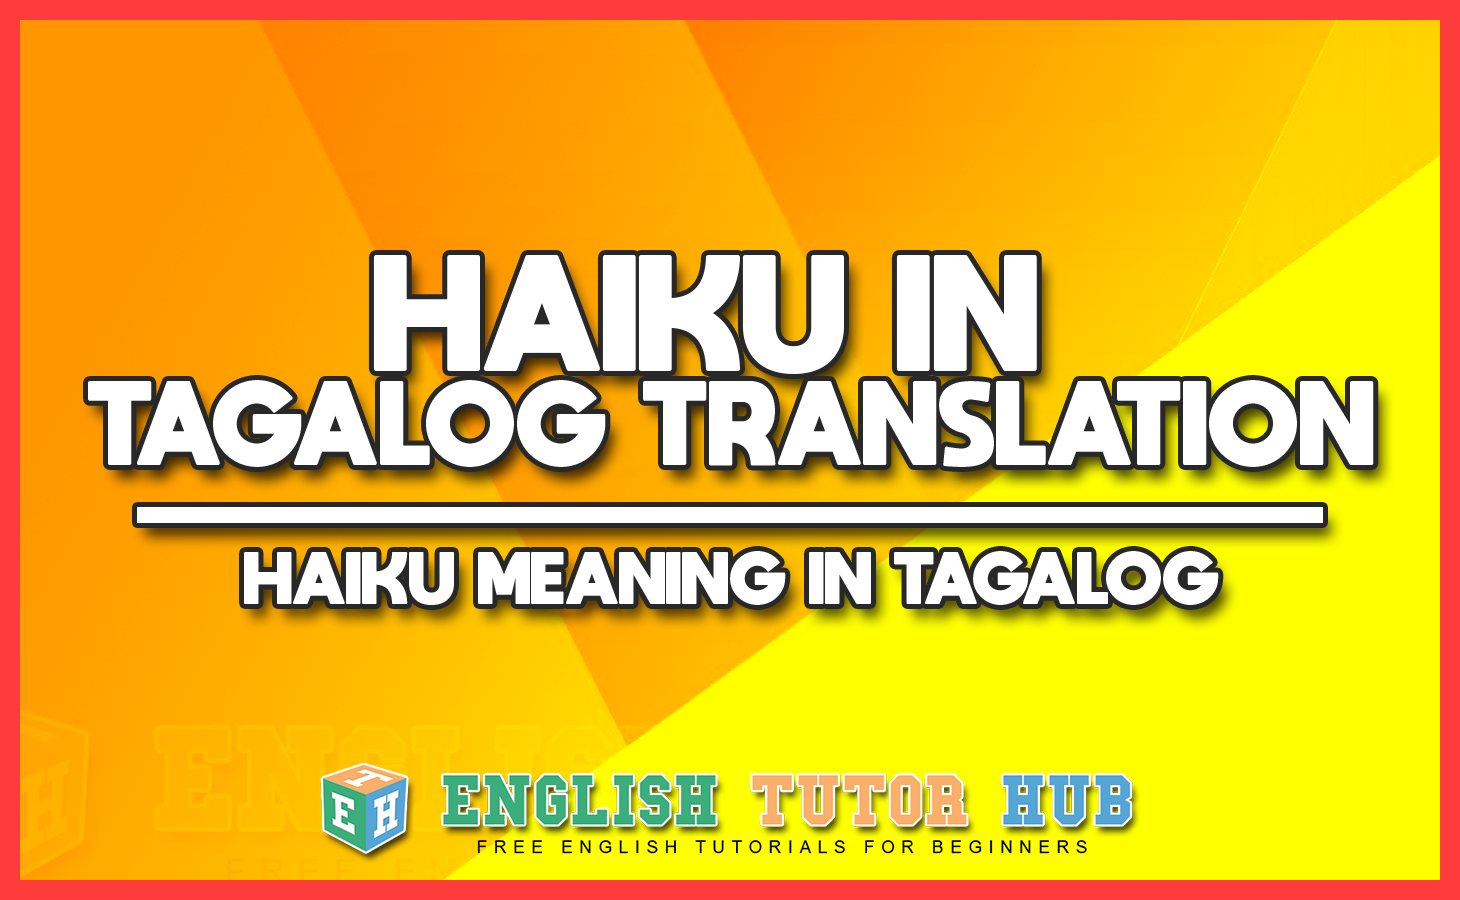 HAIKU IN TAGALOG TRANSLATION